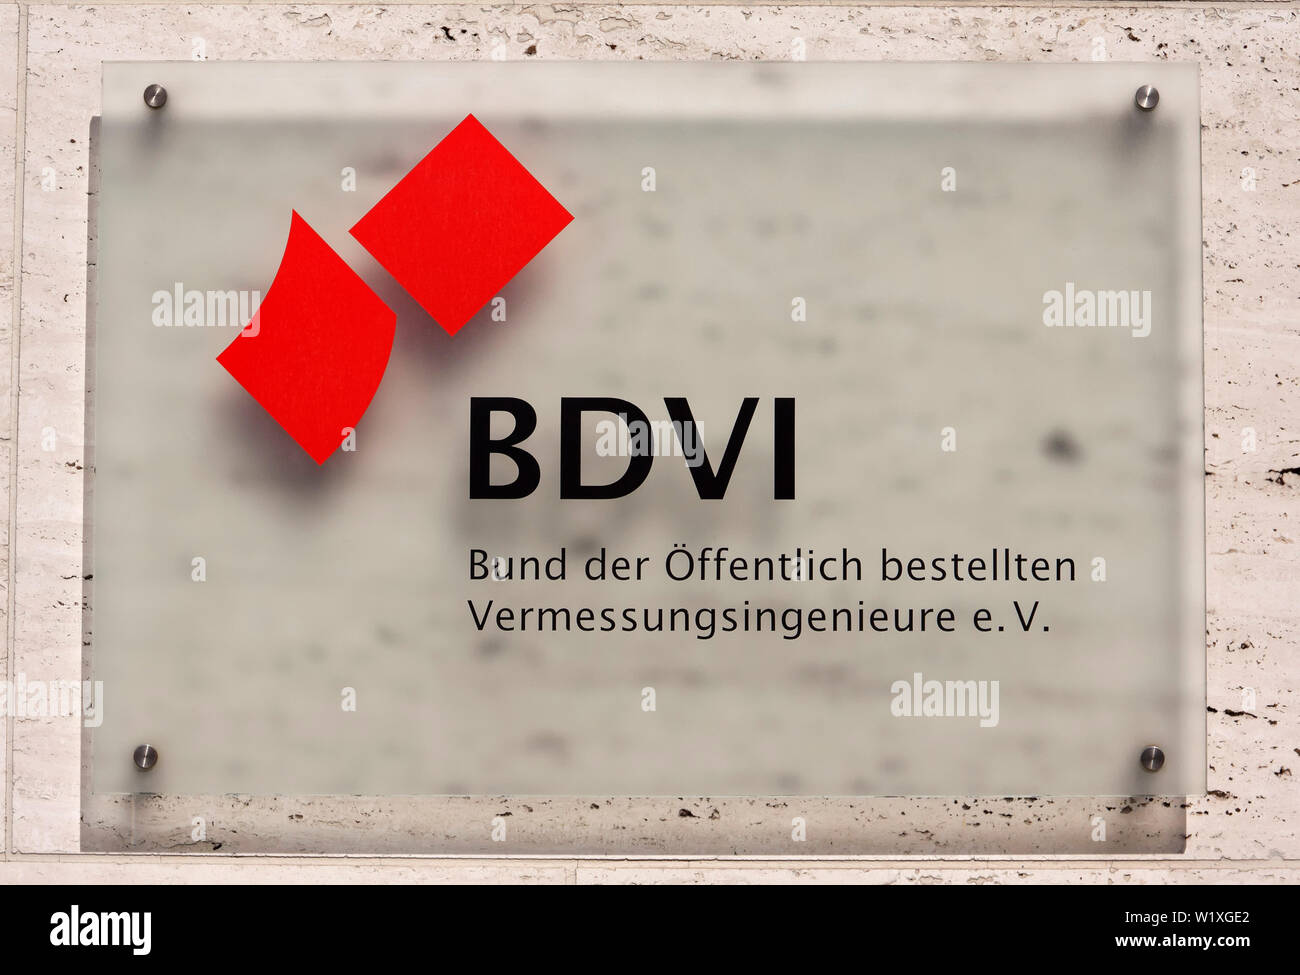 Firmar BDVI Bund der Öffentlich bestellten Vermessungsingenieure e.V. Foto de stock